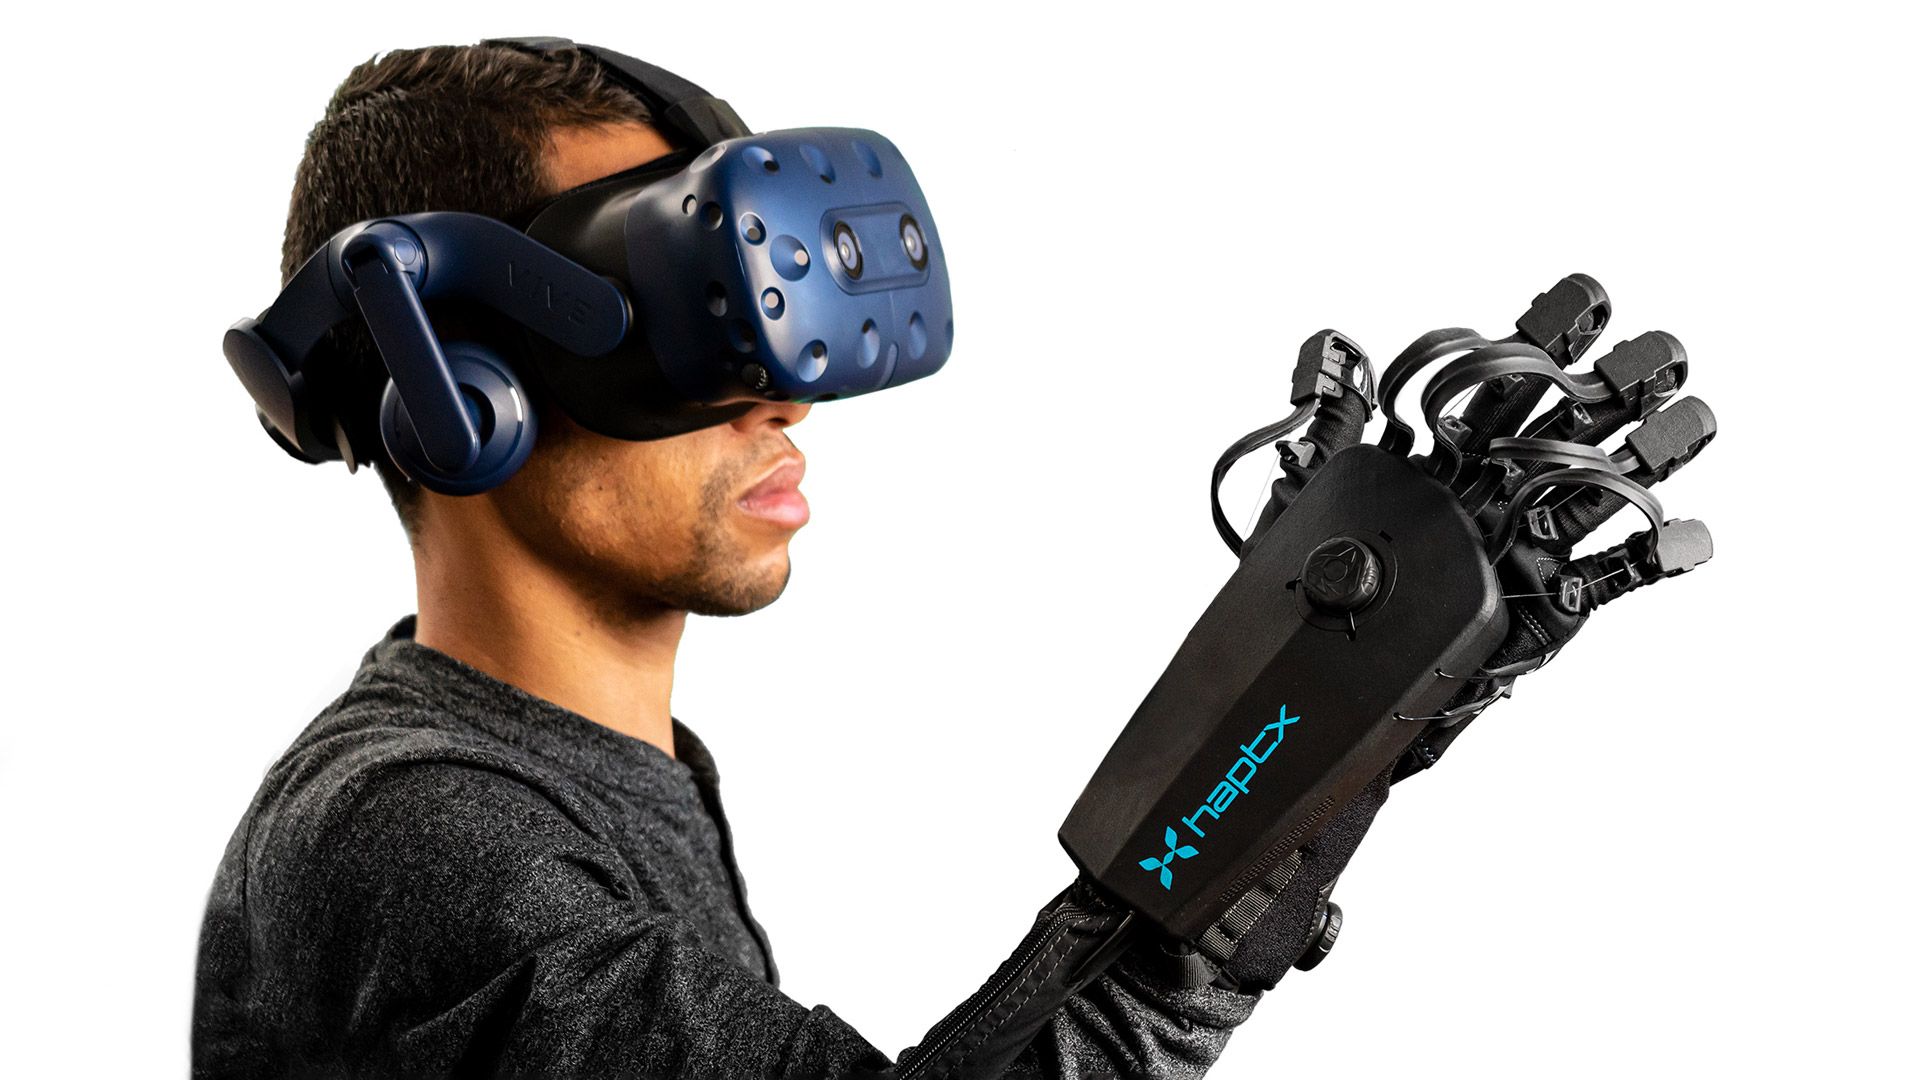 Una startup con sede en Seattle dice que el prototipo de guante Meta VR es "idéntico" a su propia tecnología patentada.